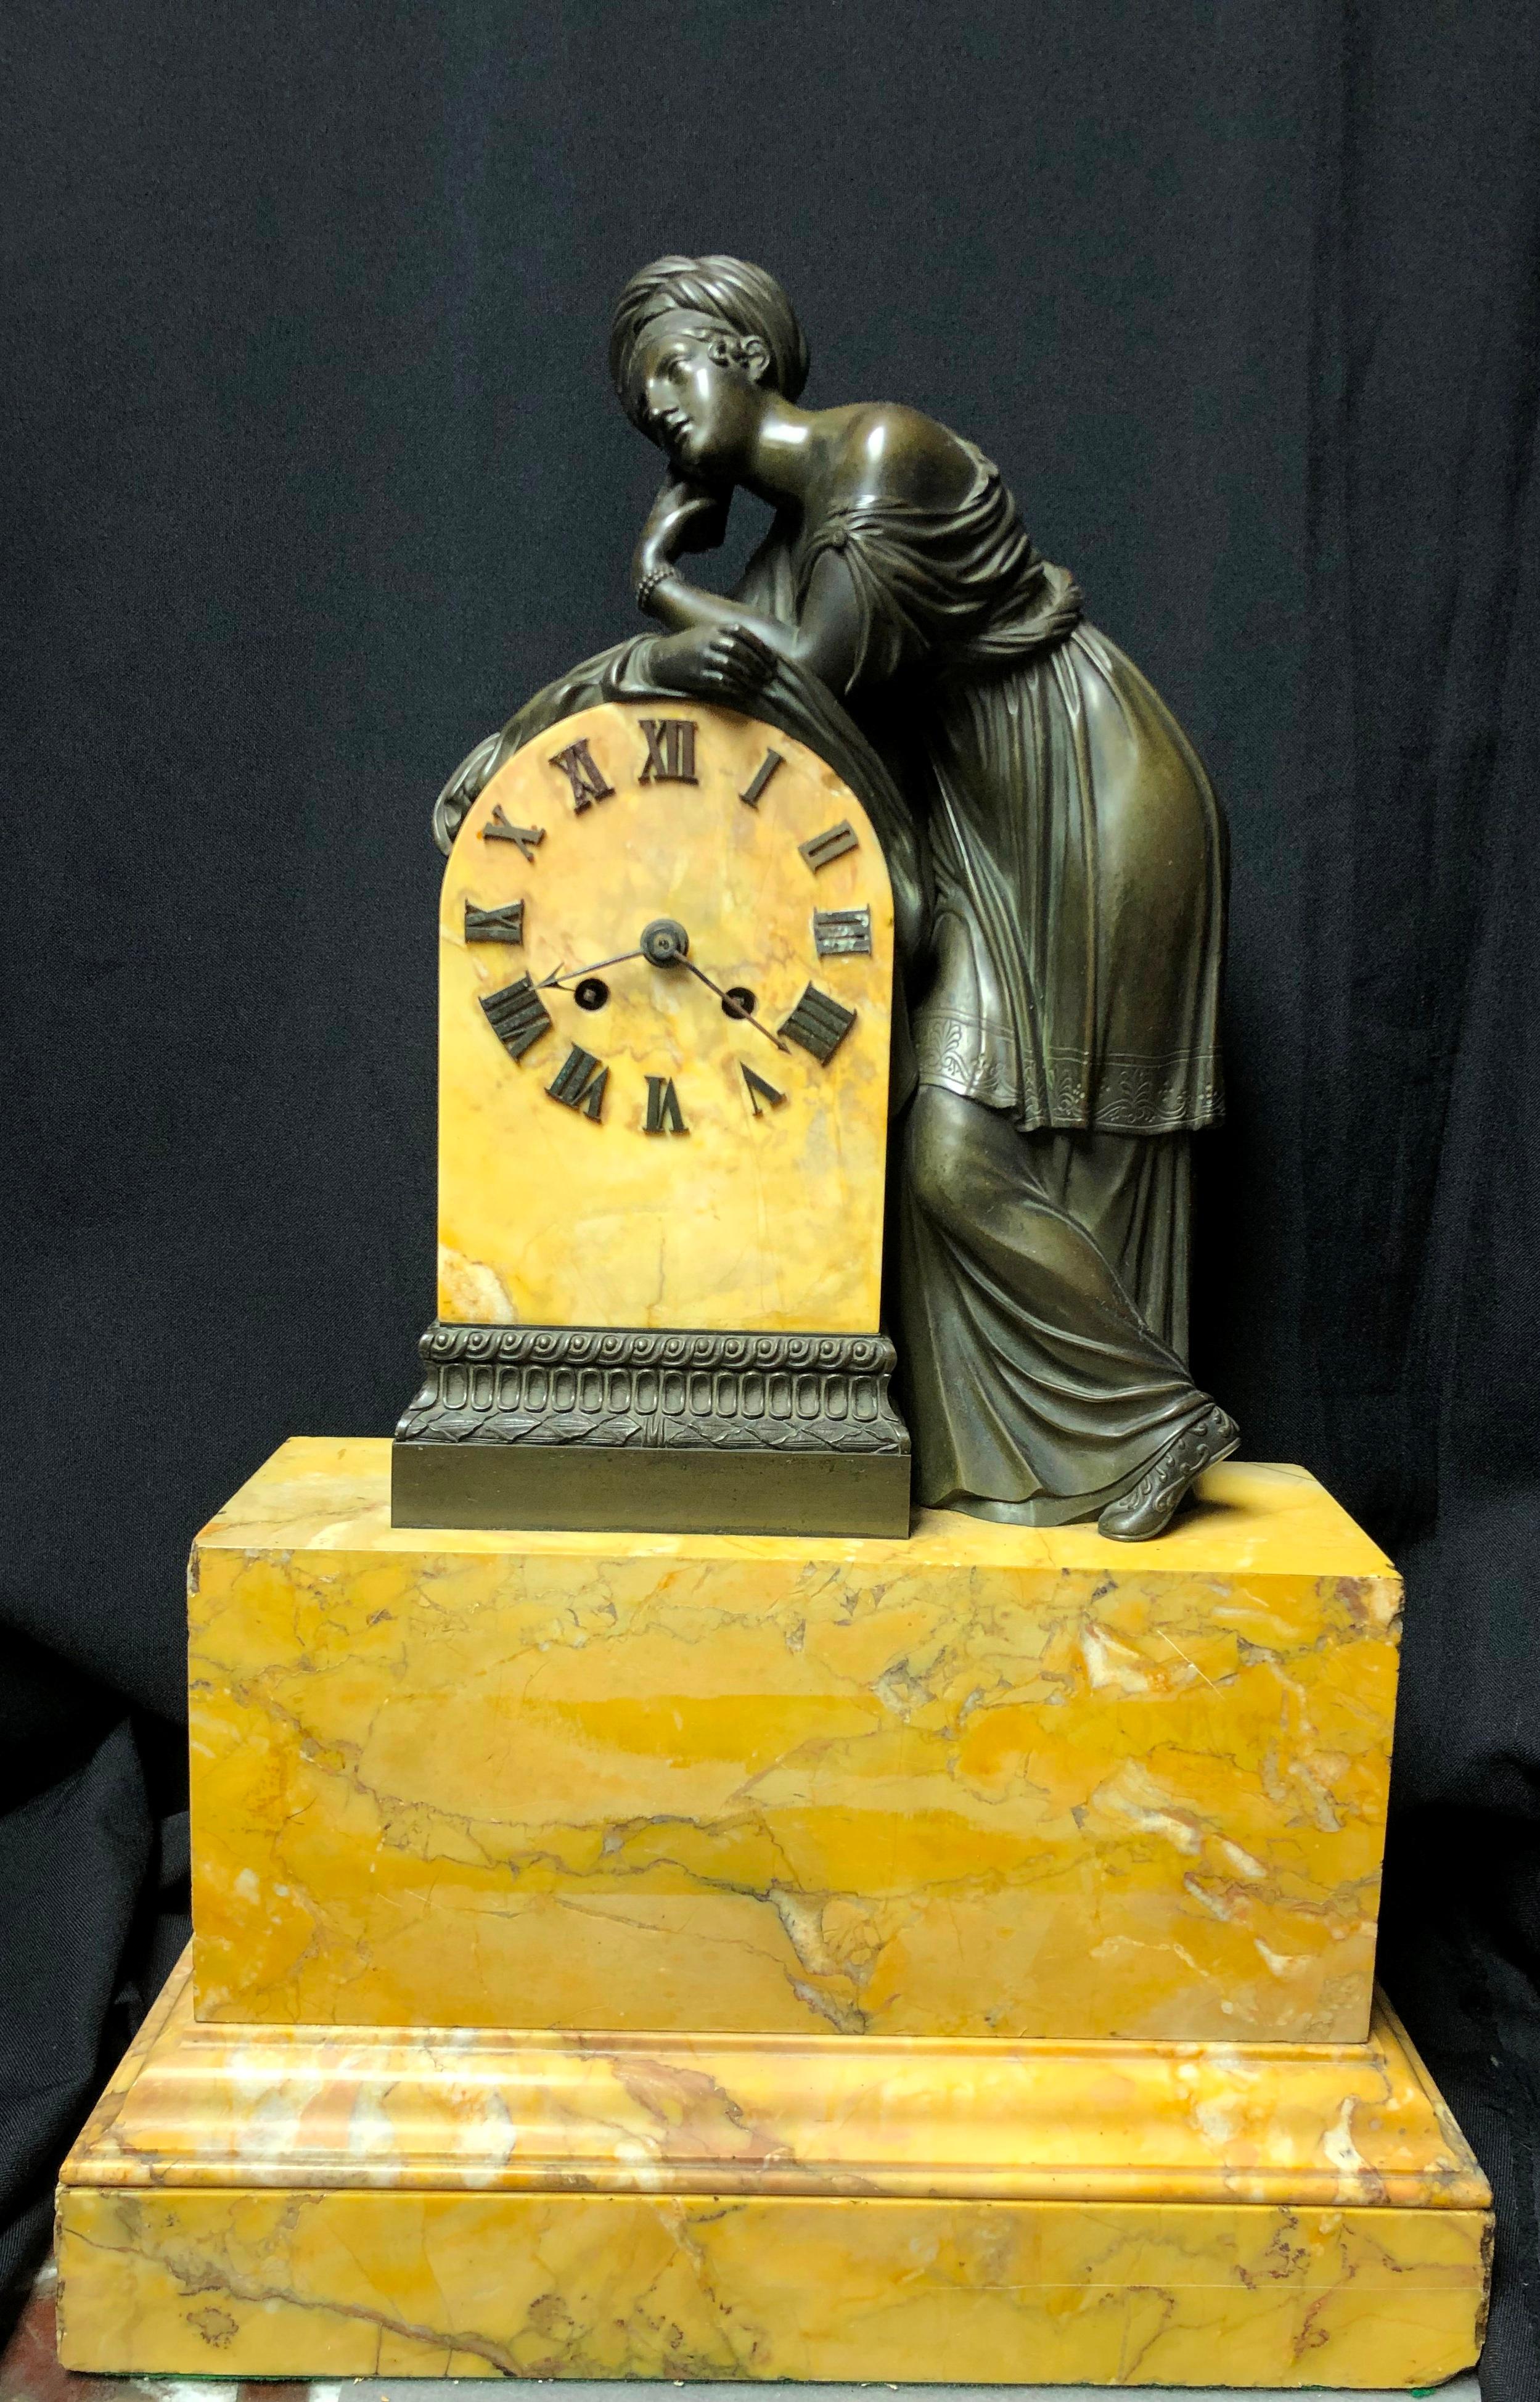 Schöne französische Kaminsimsuhr aus patiniertem und sienafarbenem Marmor von Charles X.
Eine schöne klassizistische patinierte Bronze stehende Frau lehnt sich auf die Uhr, steht auf Siena Marmor Sockel. 
Das Uhrwerk ist nicht garantiert.  